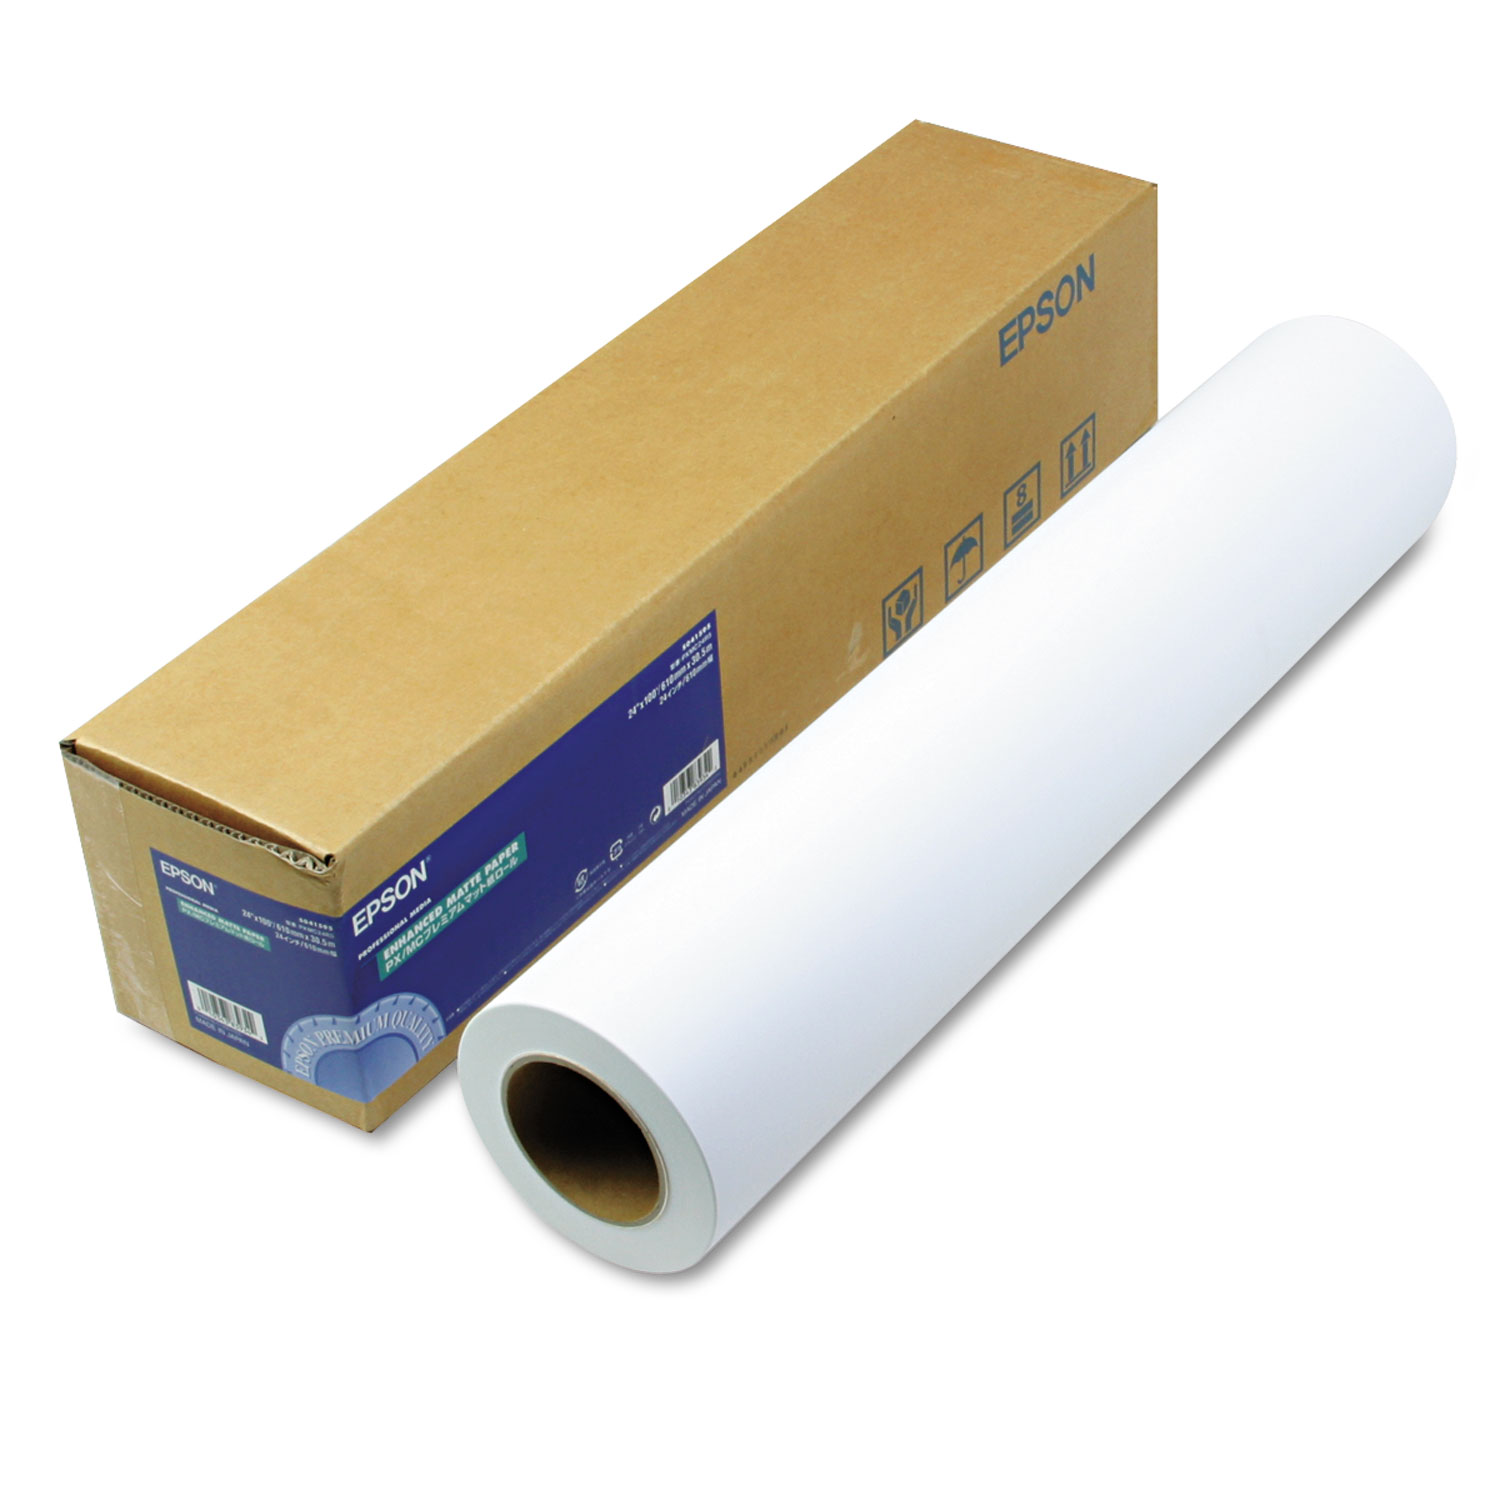  Epson S041595 Enhanced Photo Paper Roll, 24 x 100 ft, Enhanced Matte White (EPSS041595) 